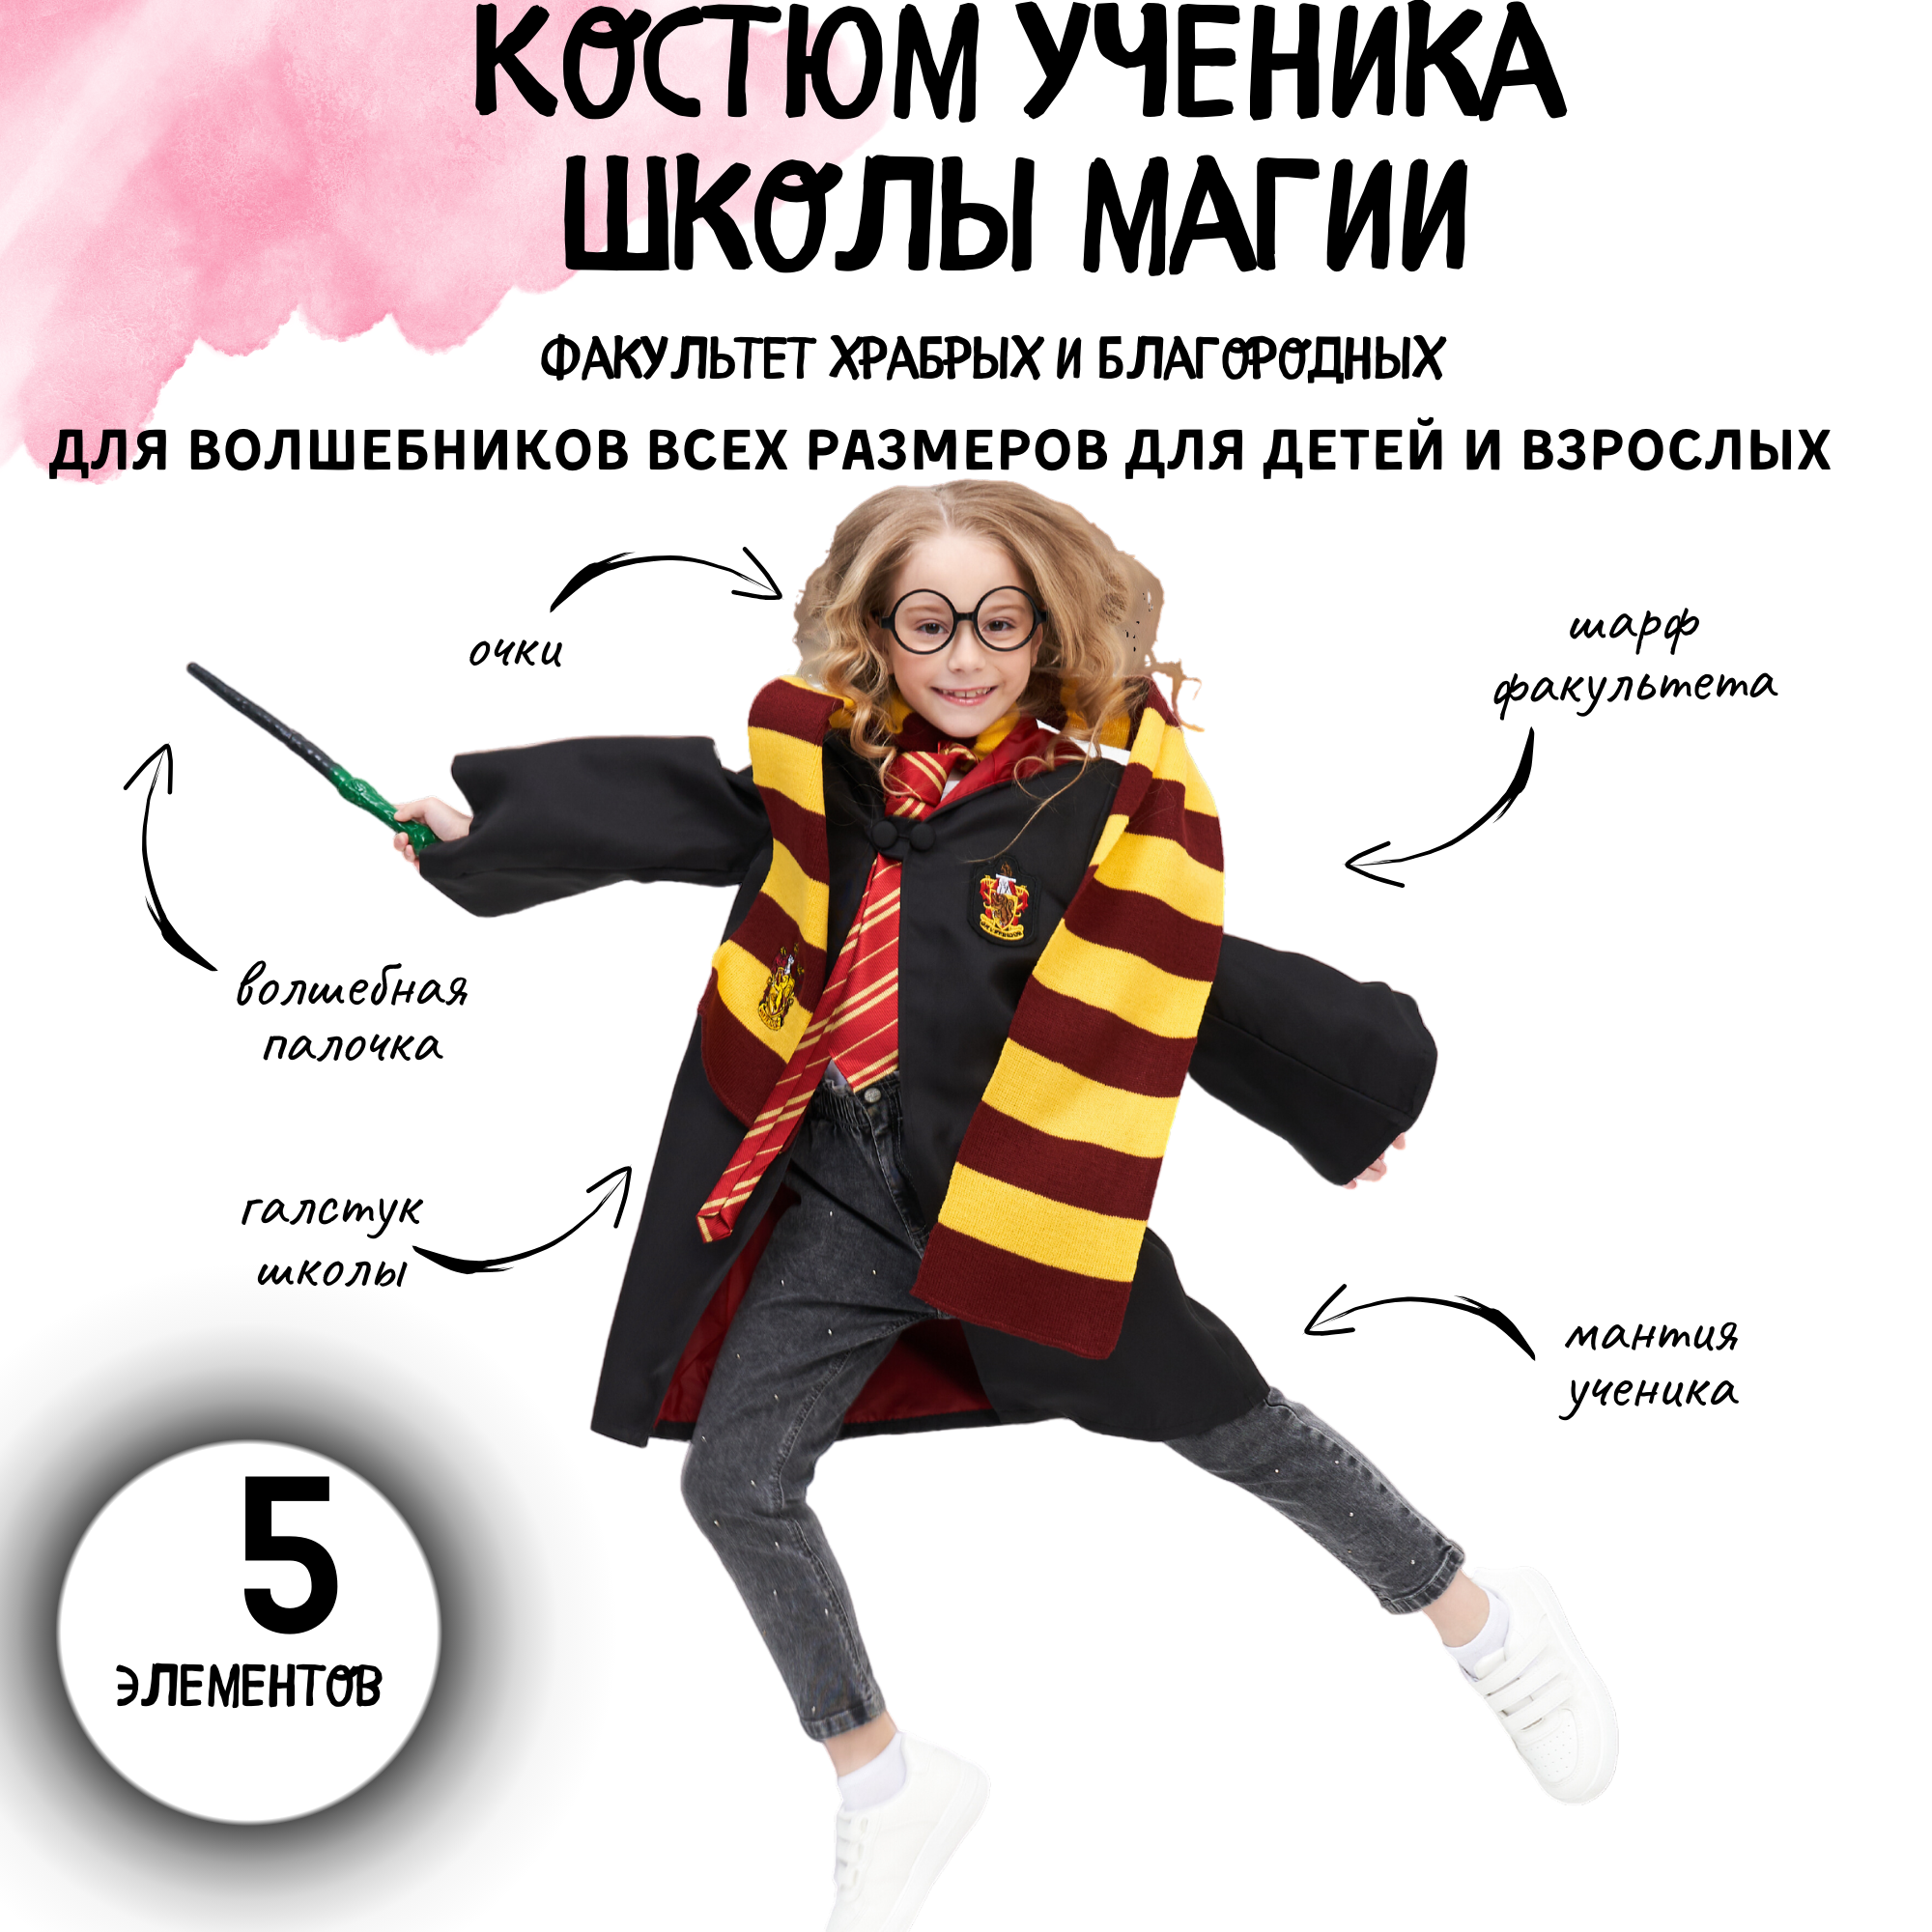 Карнавальный костюм для волшебника школы магии / Костюм Гарри Поттер